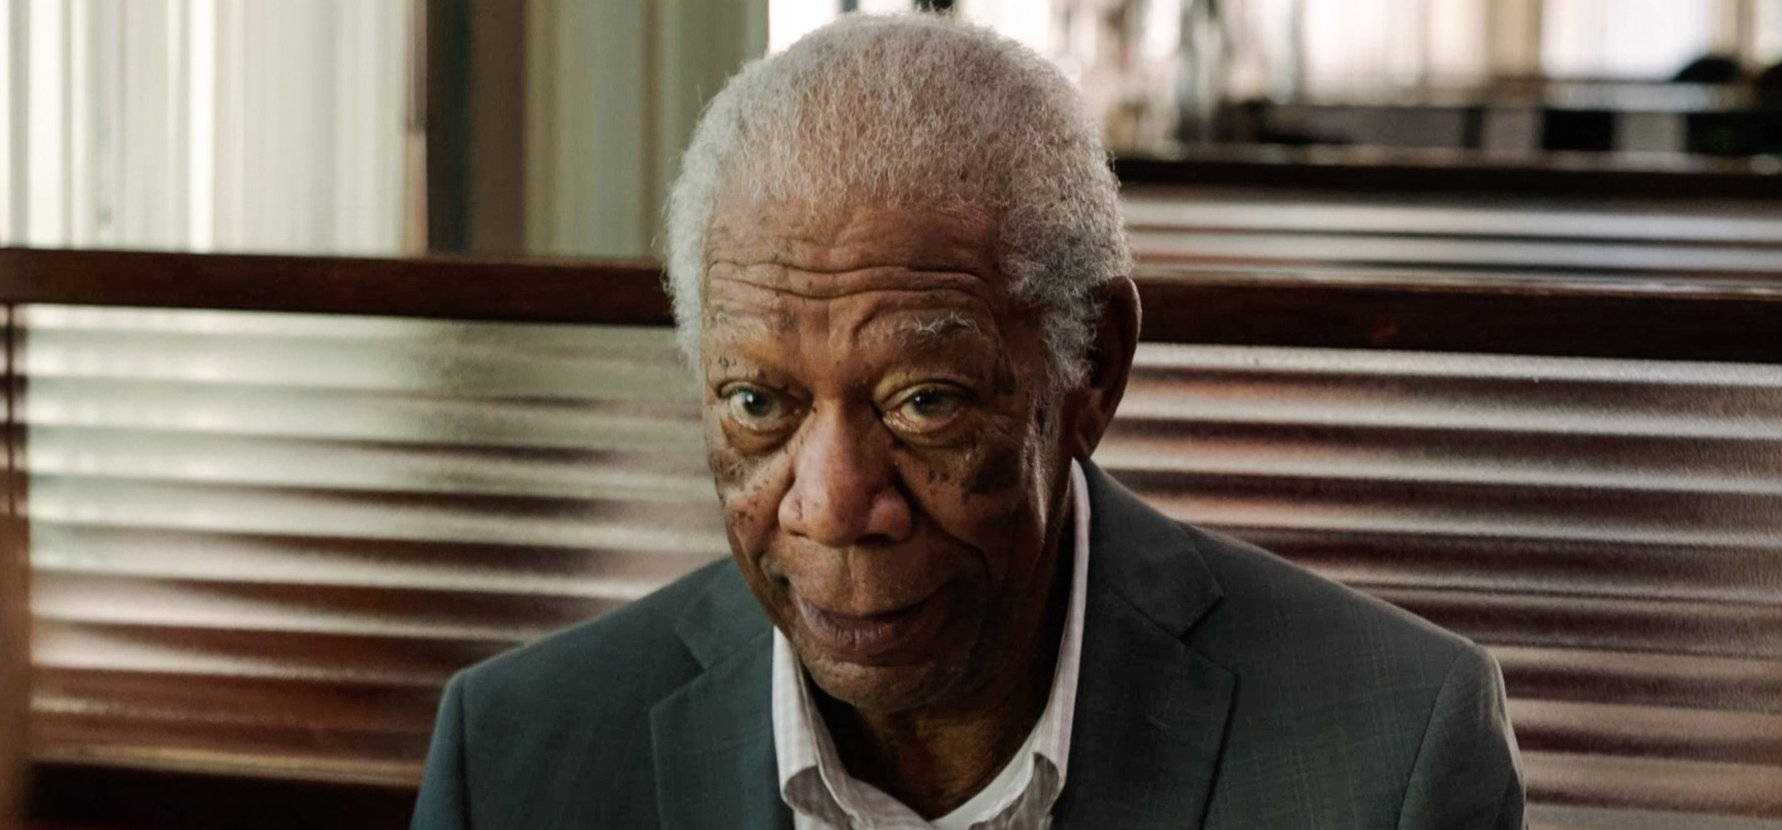 Elfeledett, borzasztó videó a fiatal Morgan Freemanről, aki mindent elvállalt a karrierje kezdetén